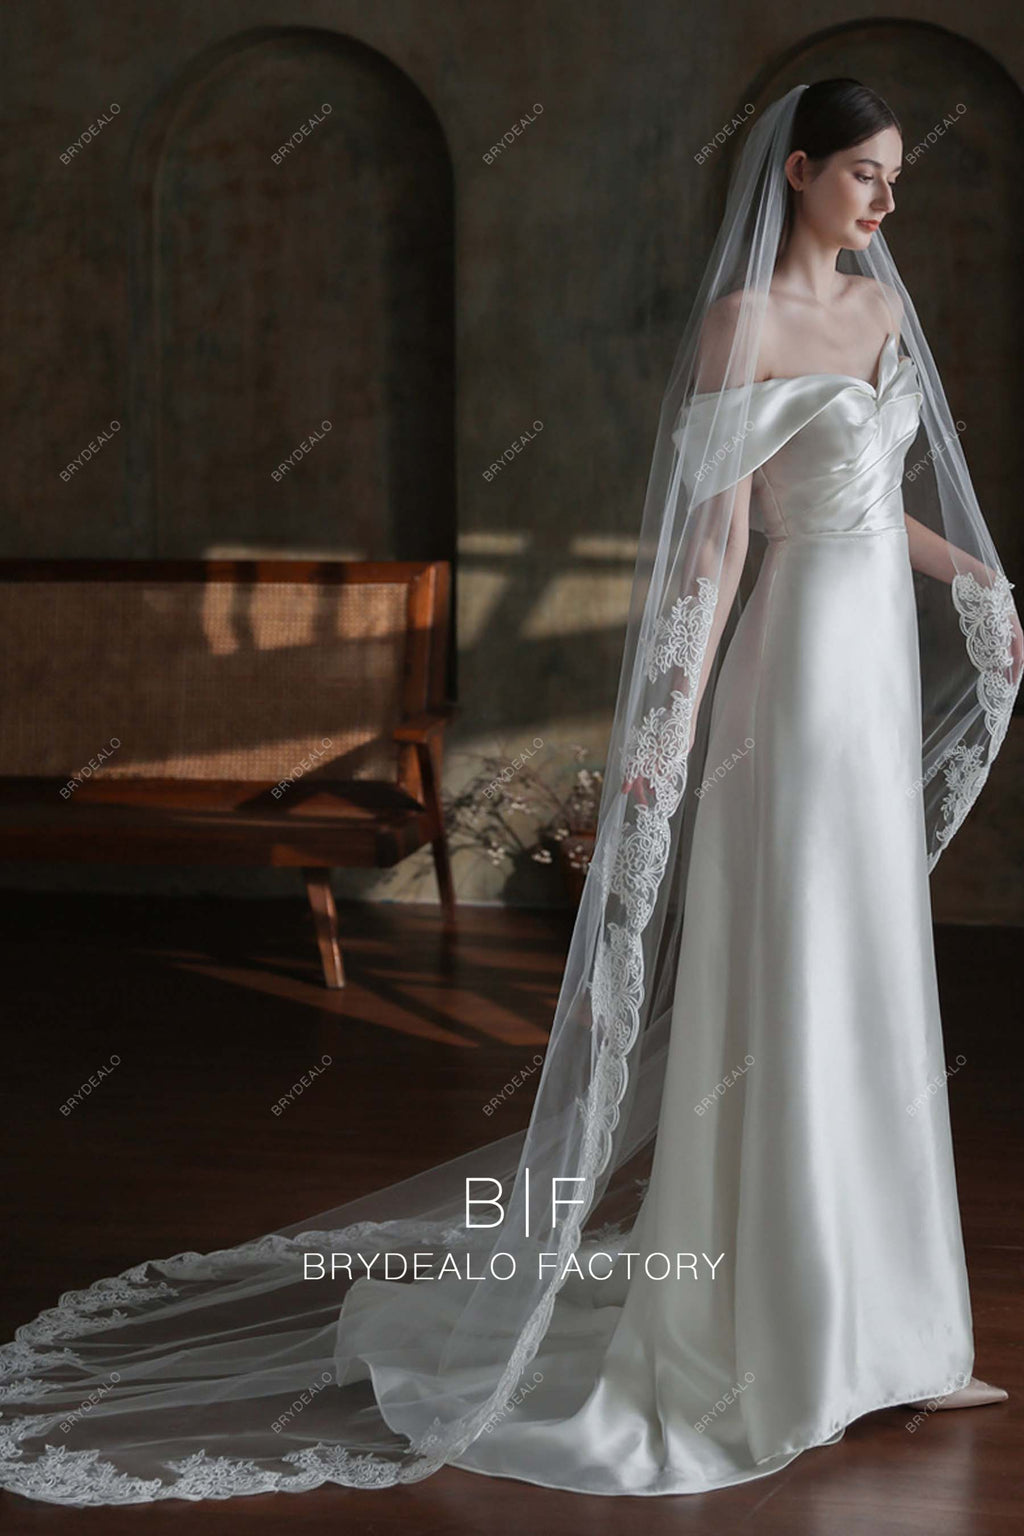 Brydealo Factory Romantic Flowers Lace Wholesale Chapel Length Wedding Veil